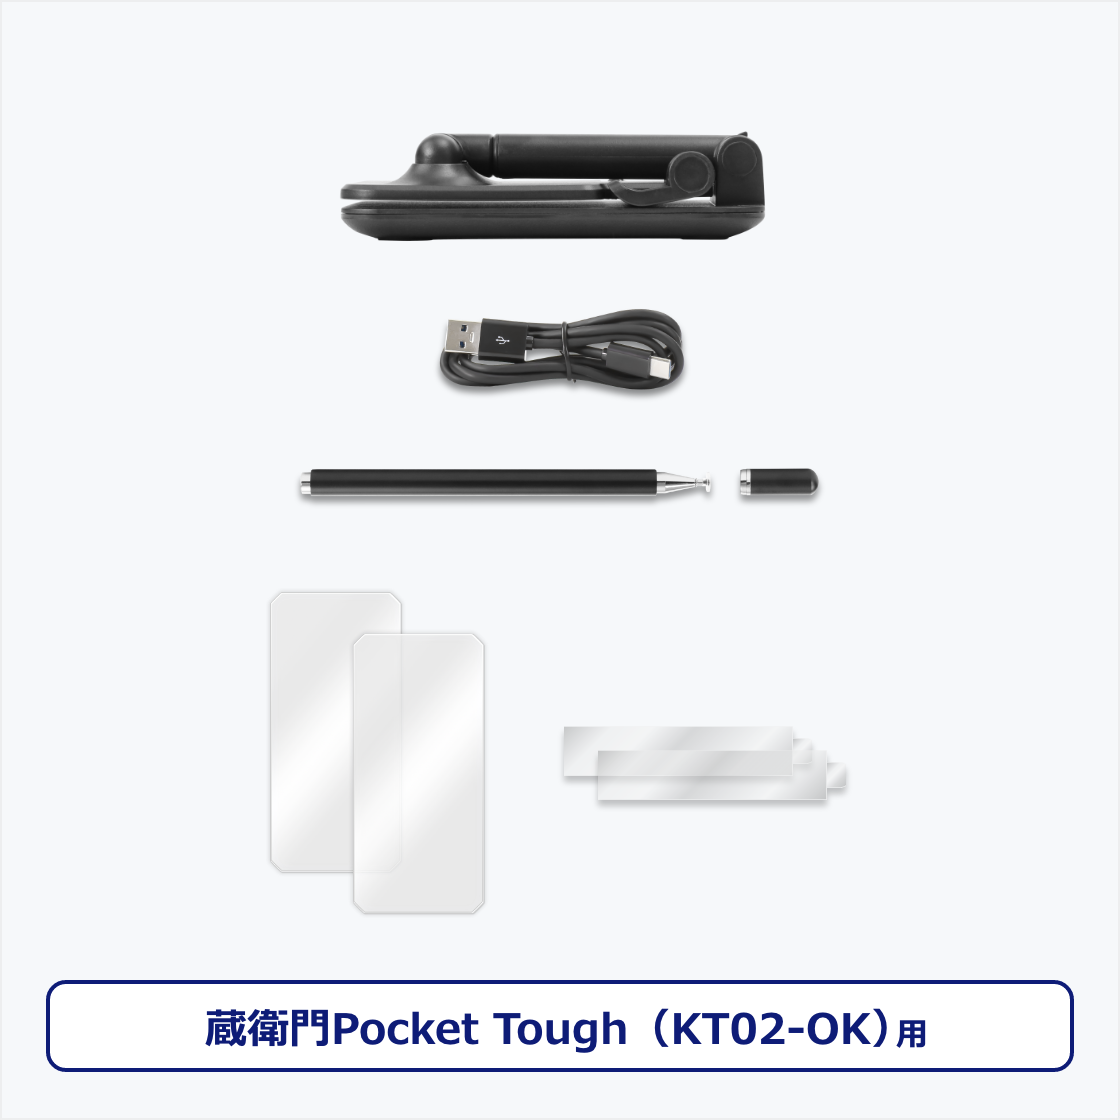 Power Kit for qPocket ToughiKT02j